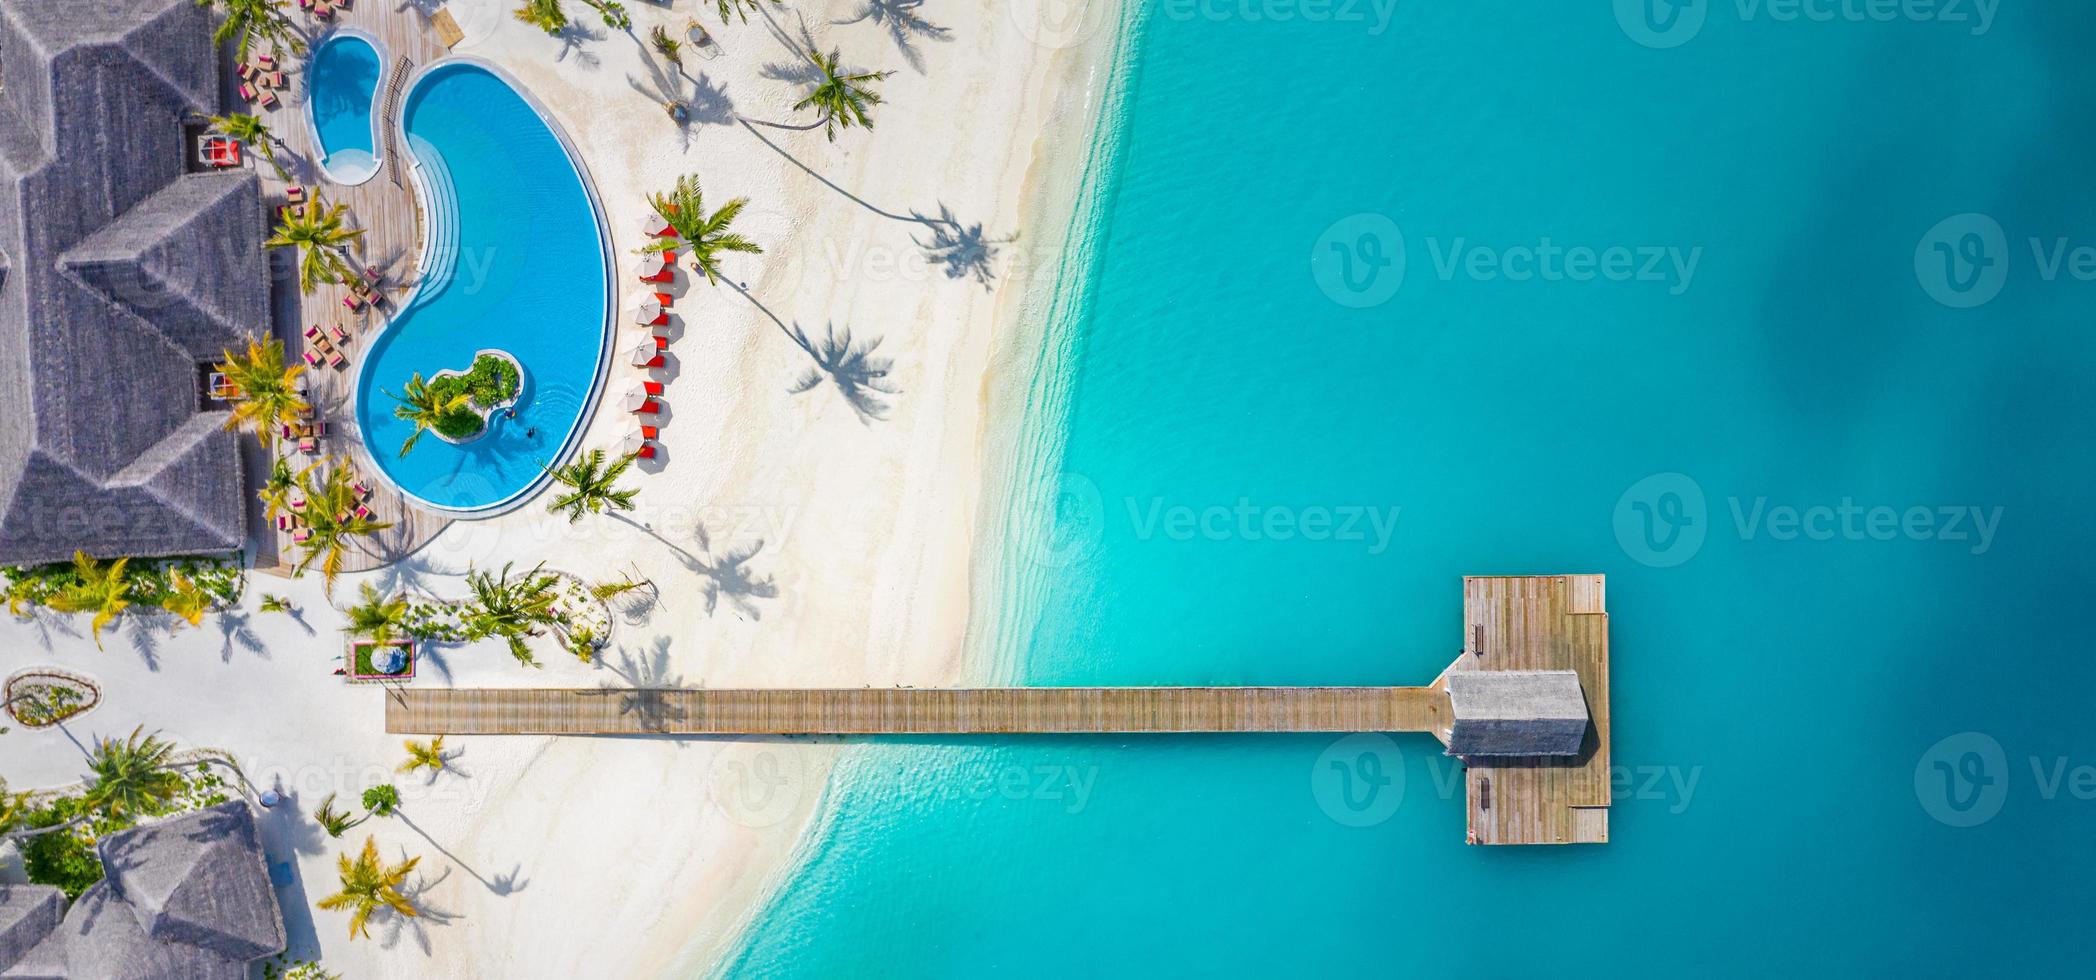 paesaggio aereo perfetto, resort tropicale di lusso o hotel con ville sull'acqua e uno splendido scenario sulla spiaggia. incredibile vista dagli occhi degli uccelli alle maldive, vista aerea del paesaggio marino su un maldive foto